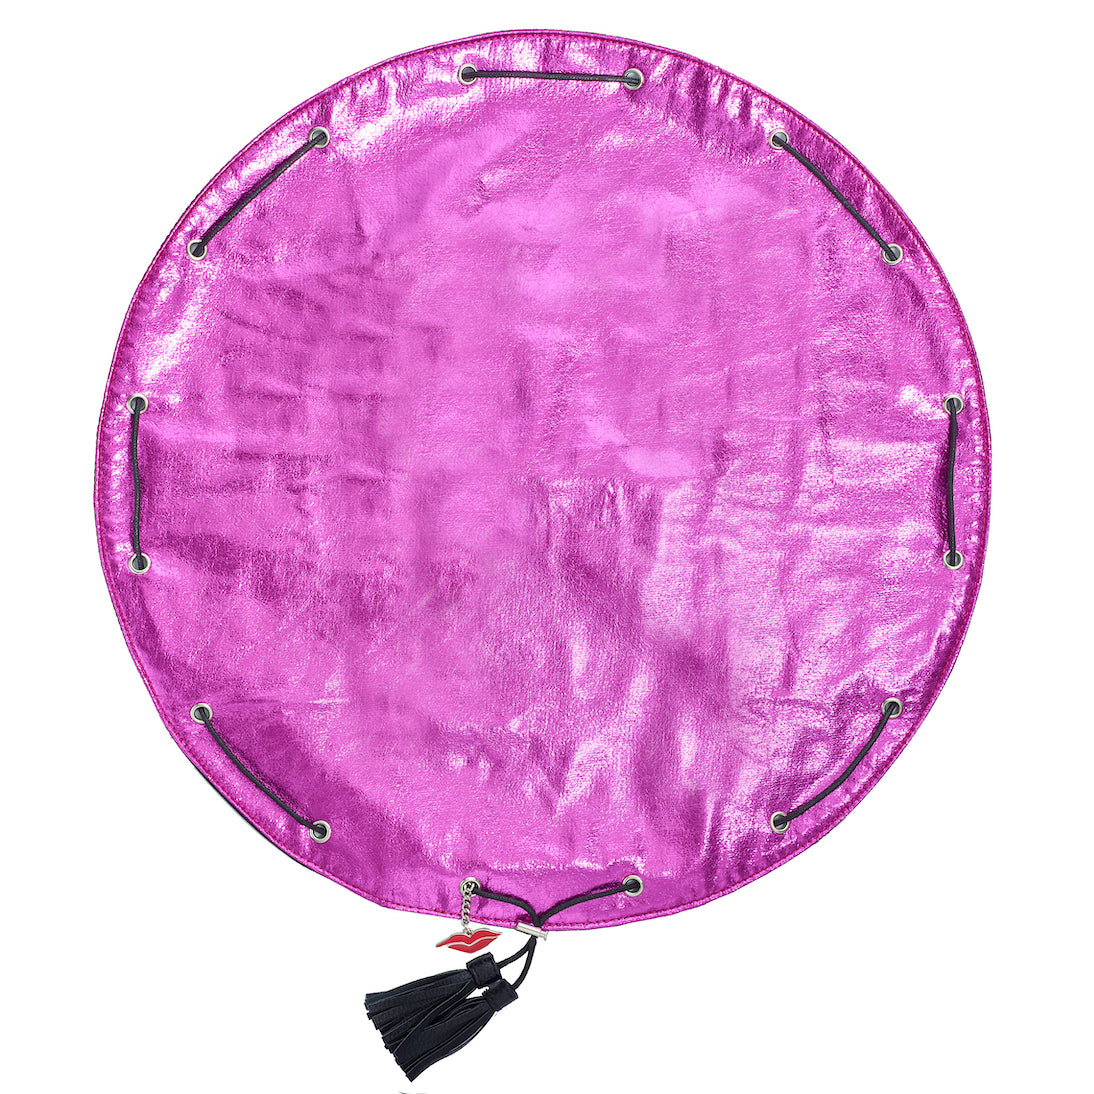 Lay Flat Makeup Bag - Hot Pink Metallic